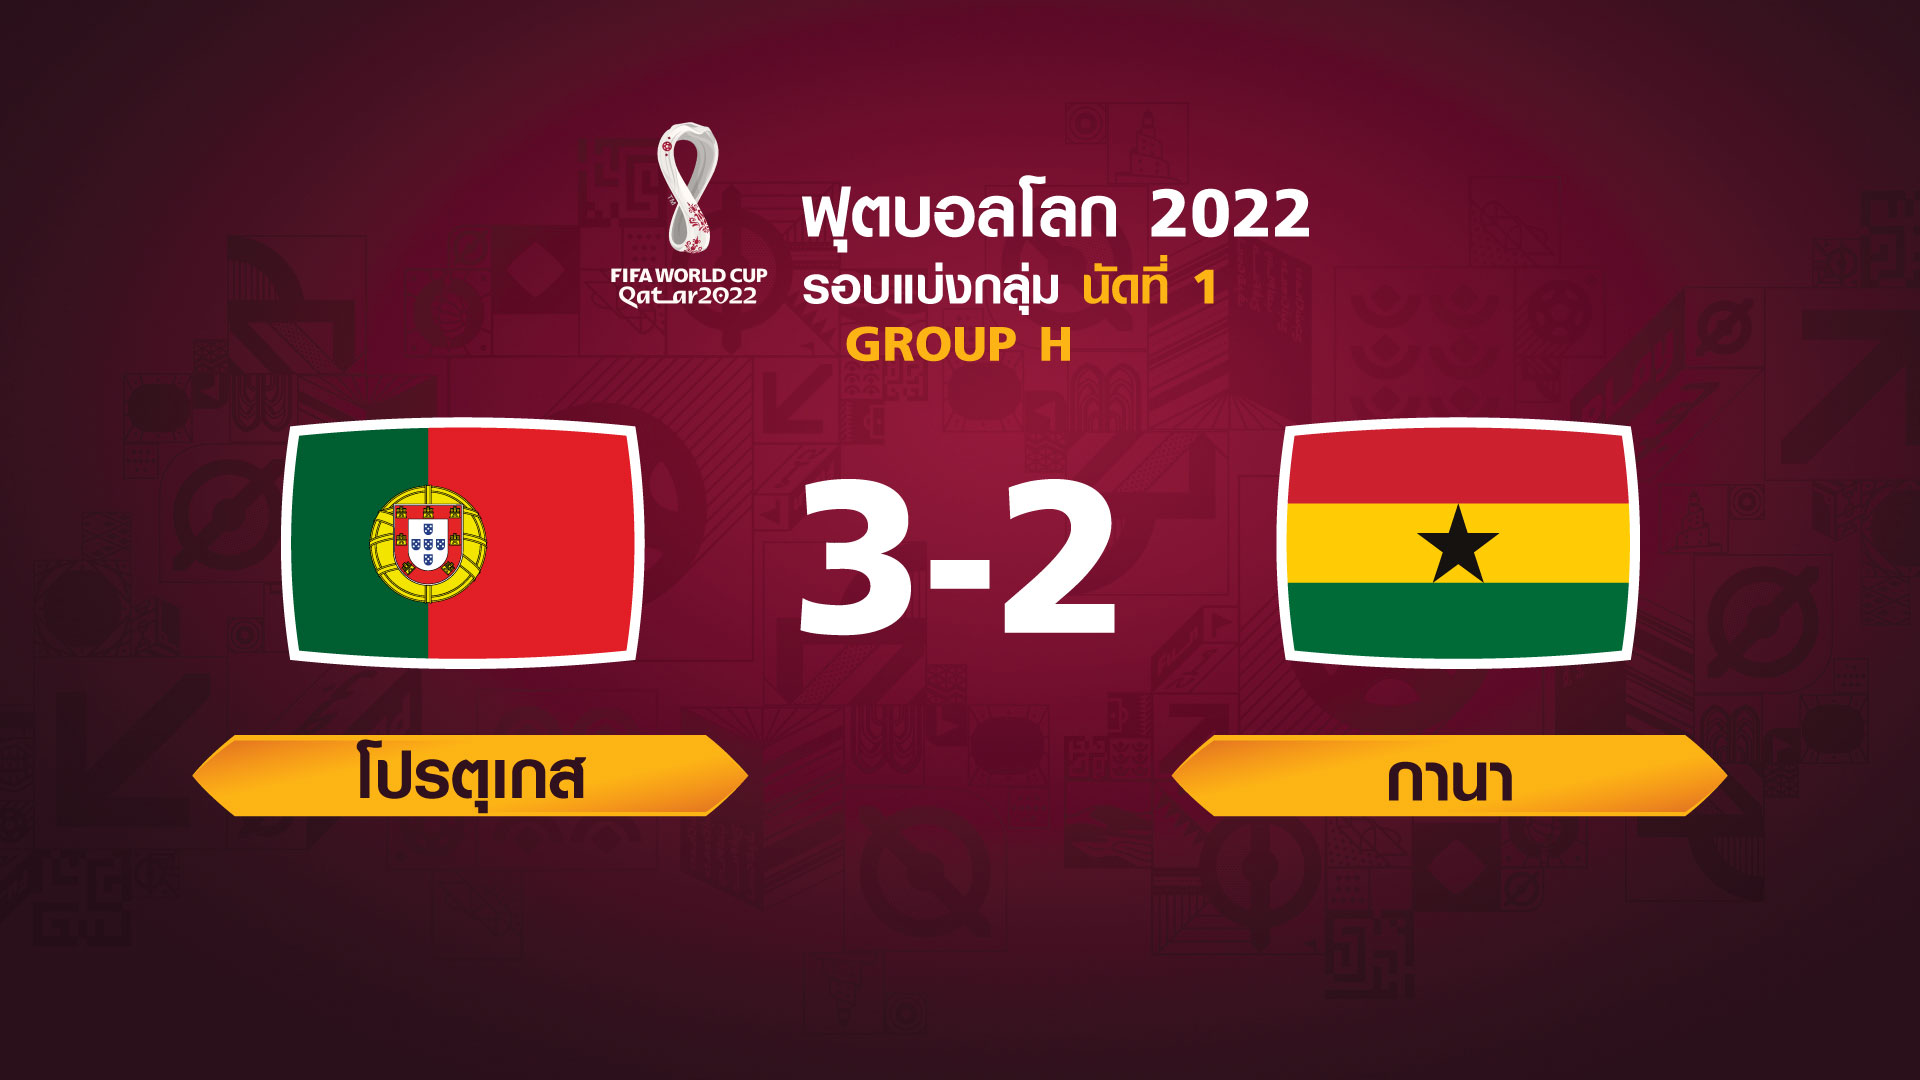 ฟุตบอลโลก 2022 รอบแบ่งกลุ่ม นัดแรก ระหว่าง Portugal vs Ghana